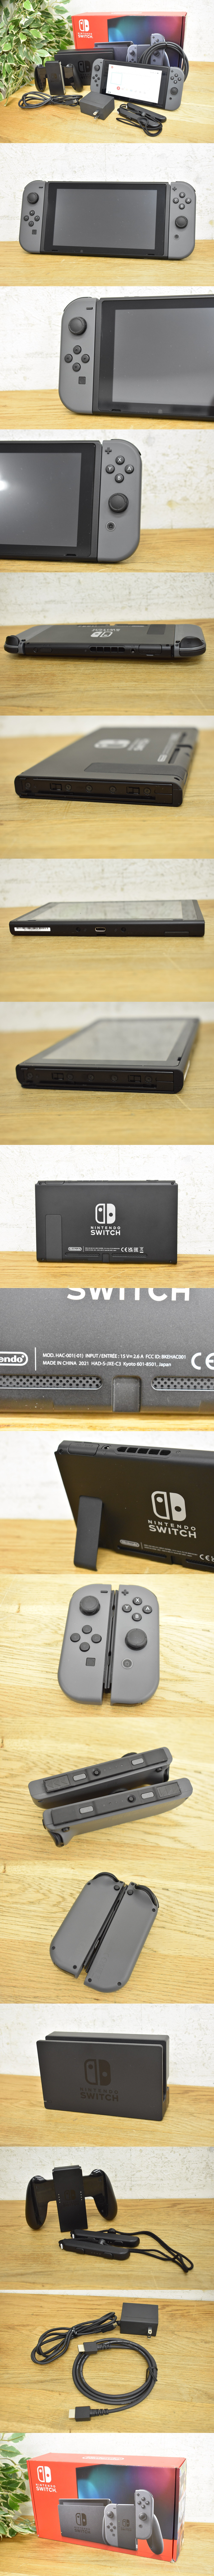 【定番在庫あ】Nintendo Switch HAC-001(-01) Joy-Con グレー 任天堂 スイッチ バッテリー持続時間が長くなった新モデル ニンテンドースイッチ本体